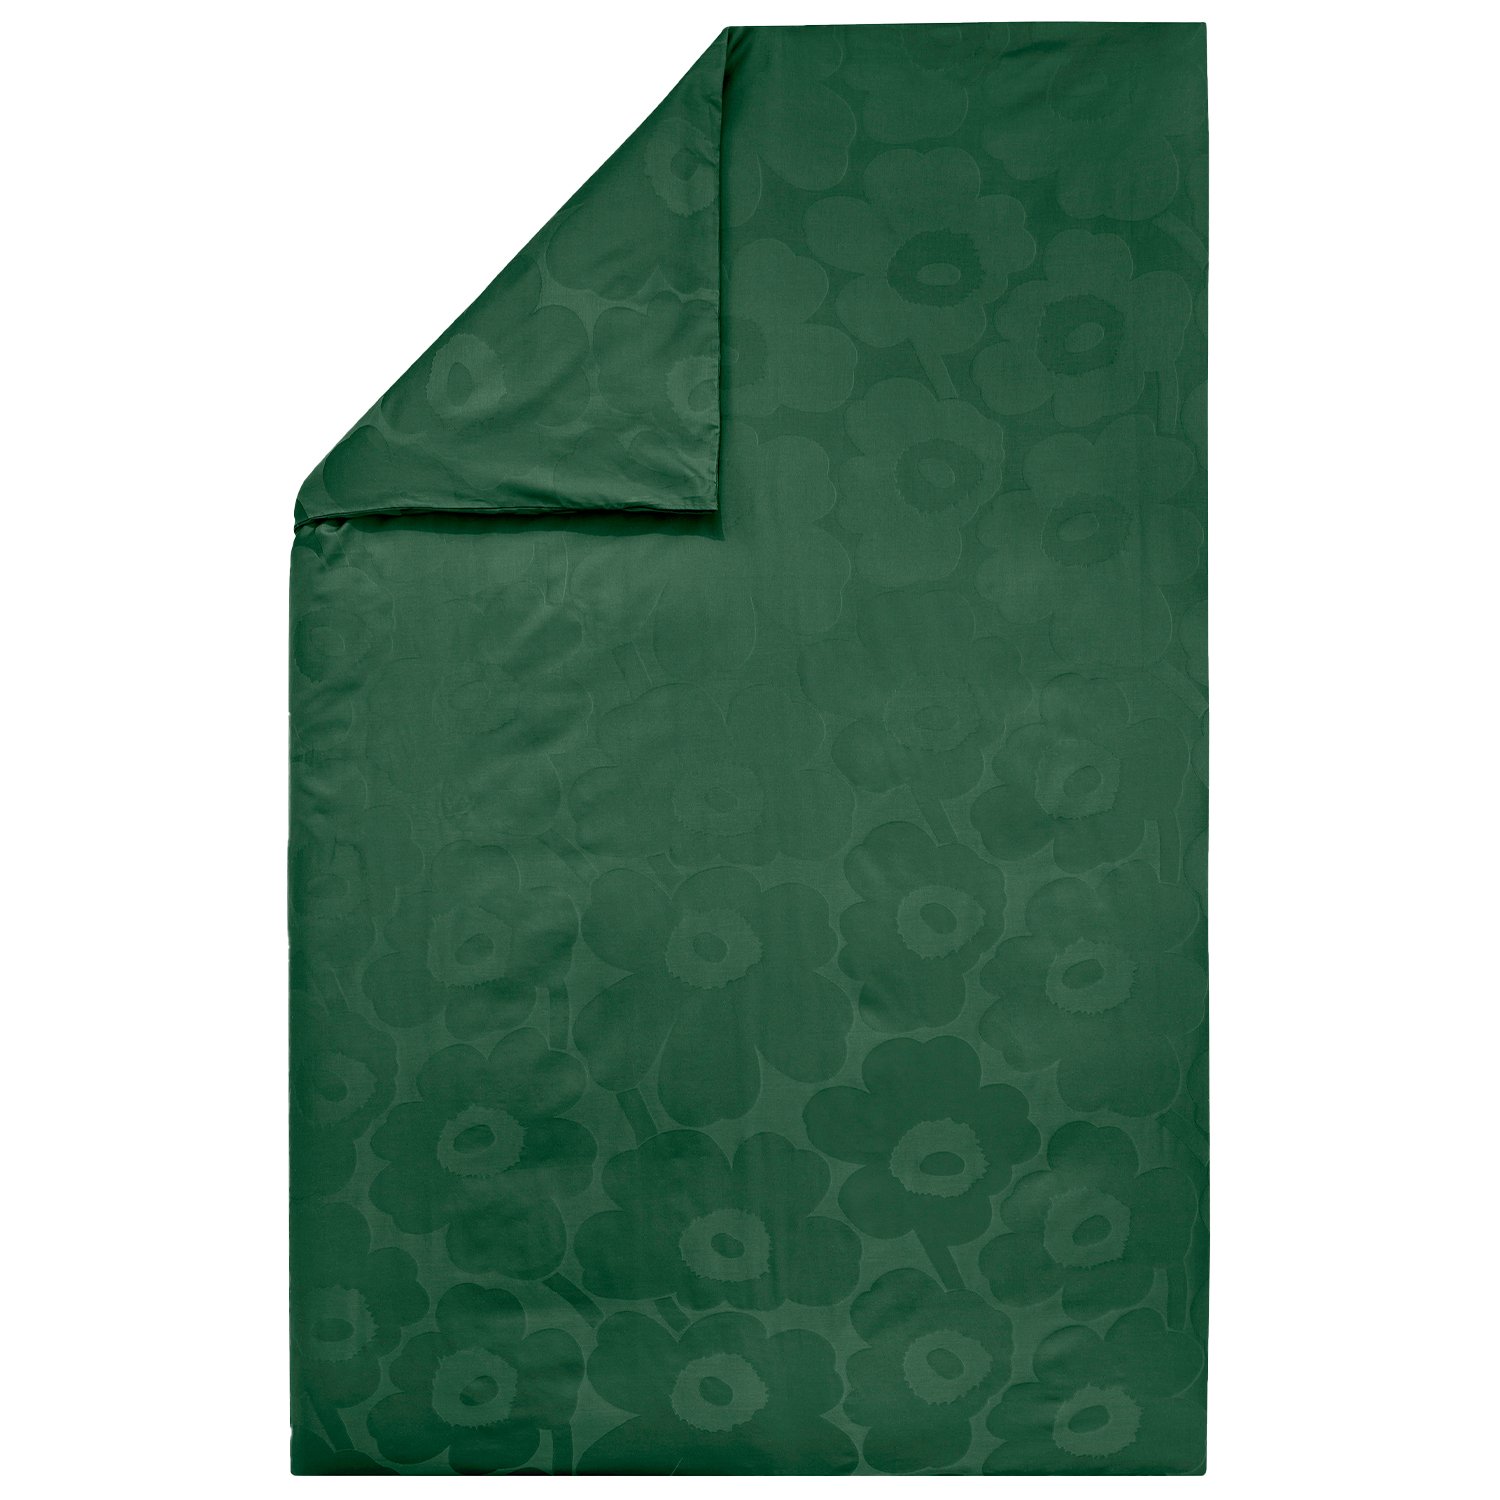 Marimekko Unikko pussilakana, 150 x 210 cm, tummanvihreä - vihreä